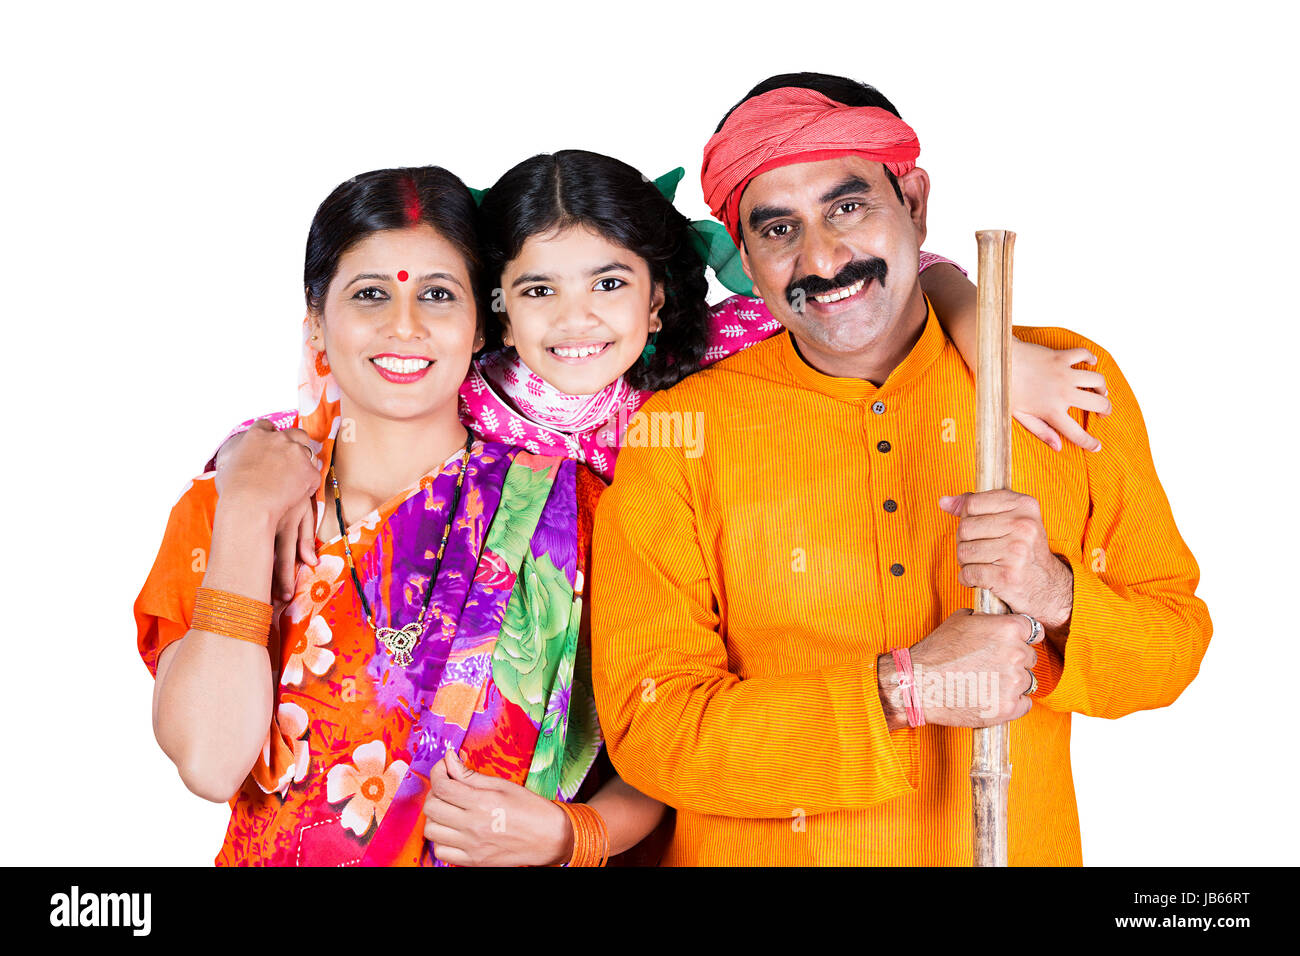 Happy Indischen ländlichen Familie - Eltern und Kind Tochter stehen gemeinsam im Studio shot auf weißem Hintergrund Stockfoto